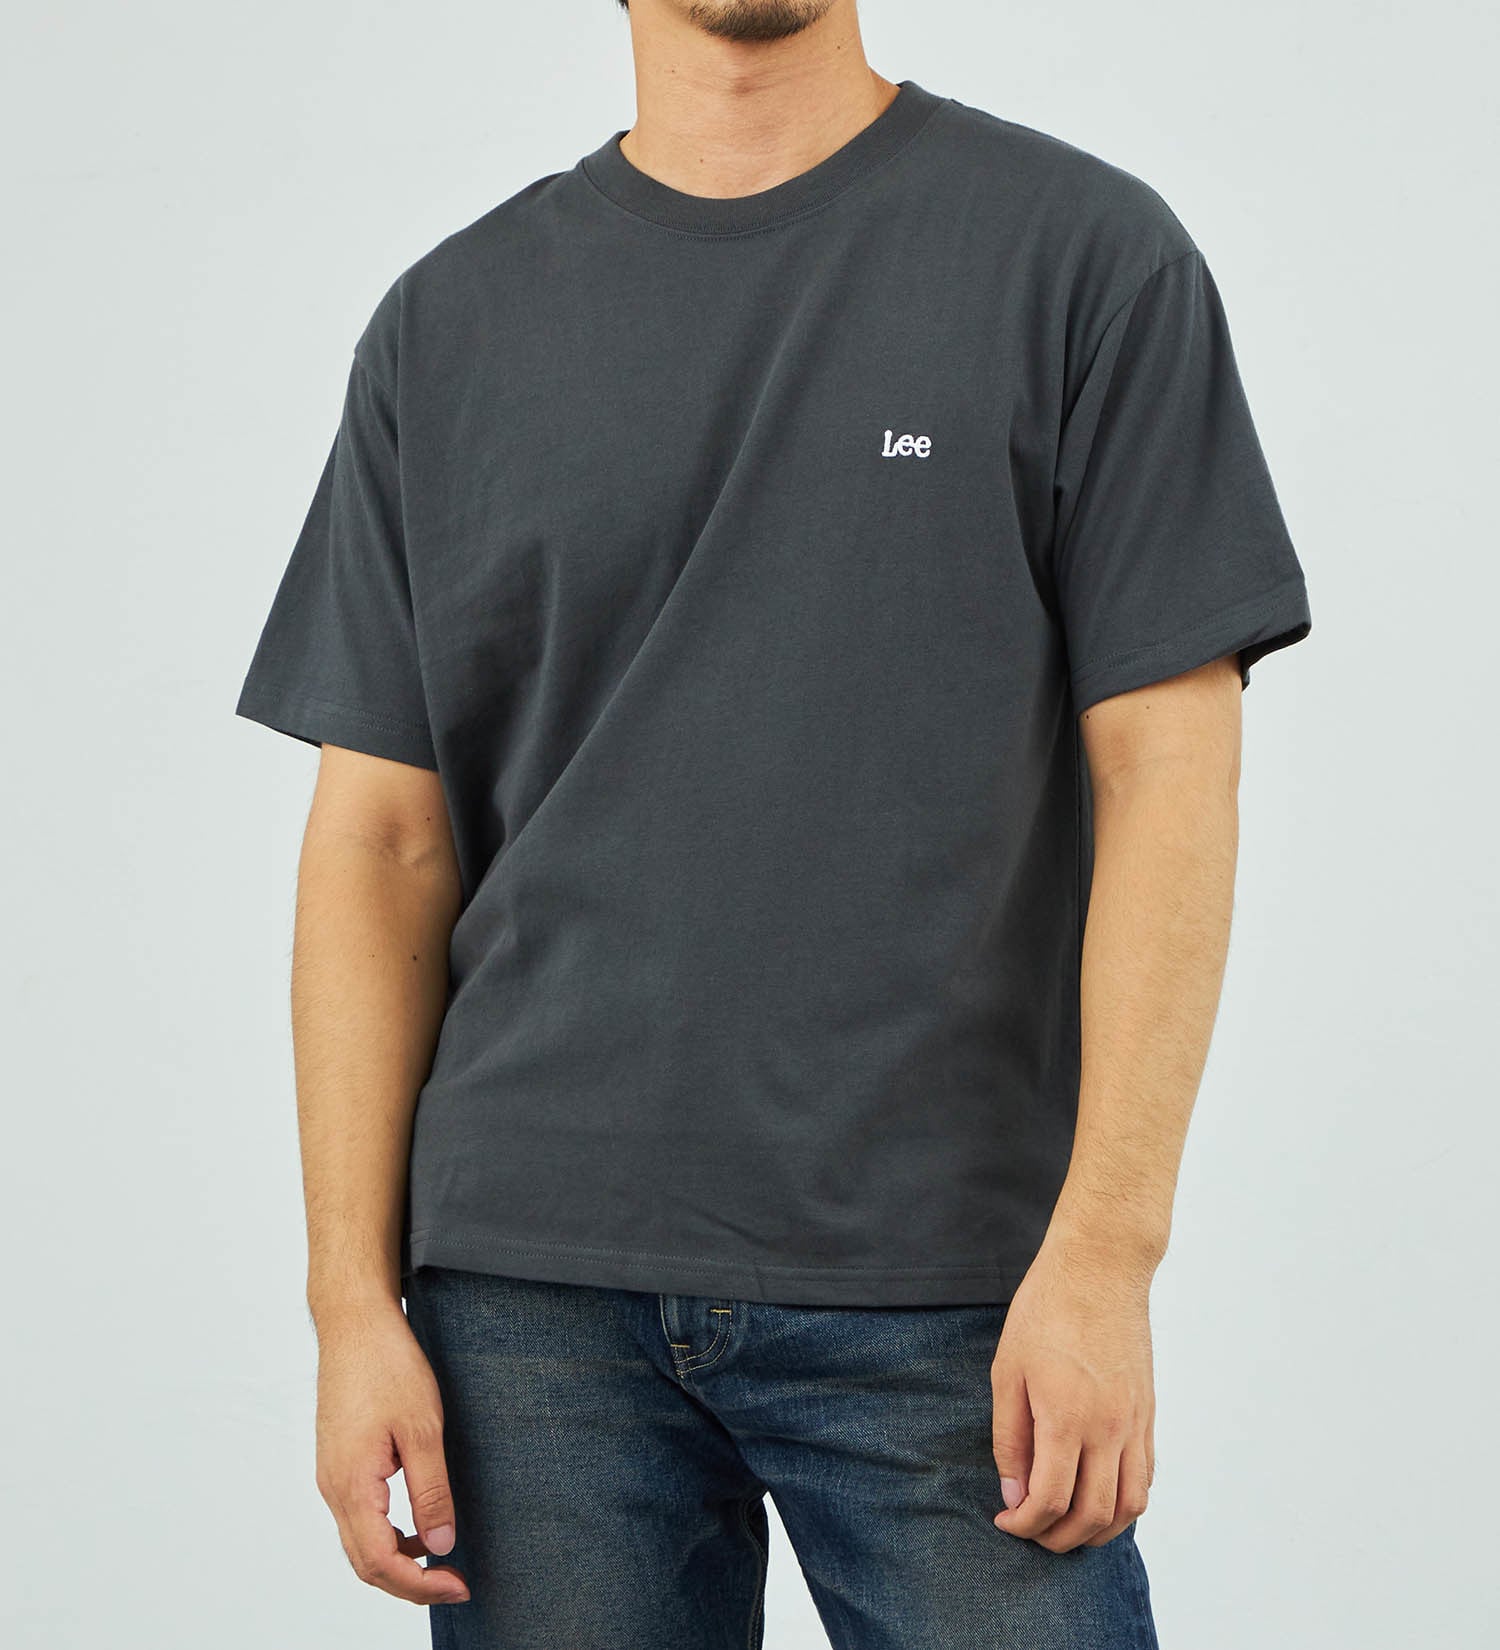 Lee(リー)の【SUMMER SALE】LeeロゴバックプリントTシャツ|トップス/Tシャツ/カットソー/メンズ|ブラック